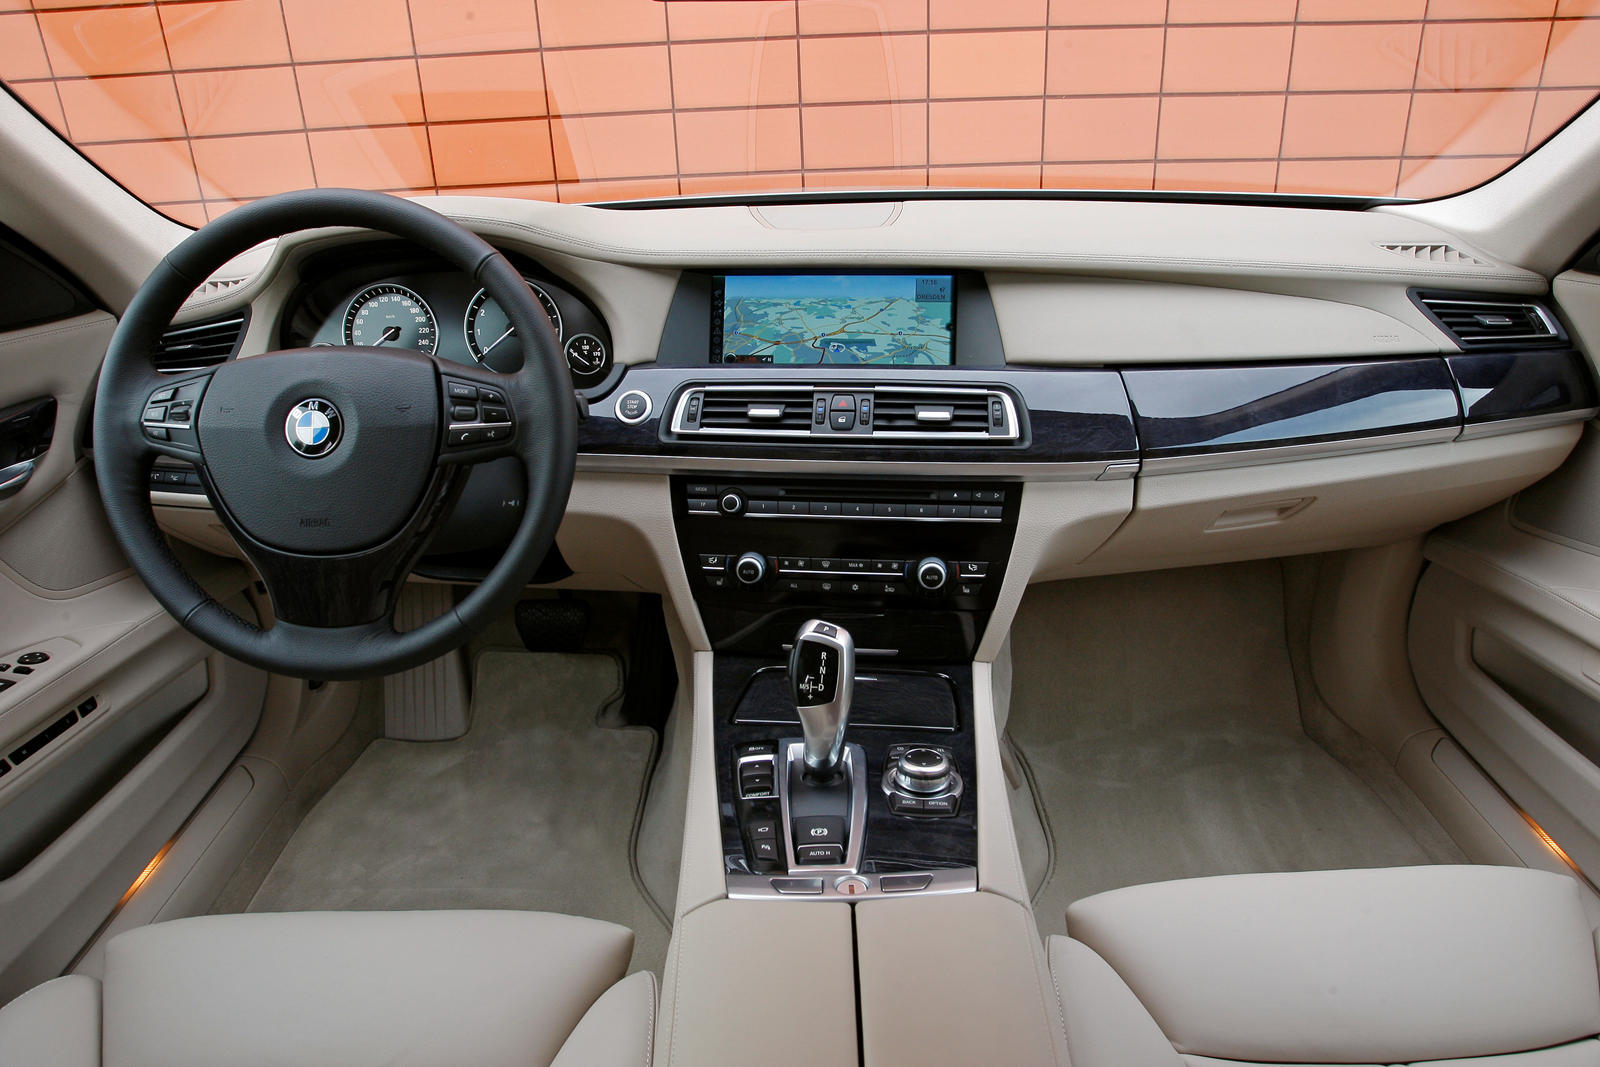 2011 BMW 7 Series Interior Photos | CarBuzz